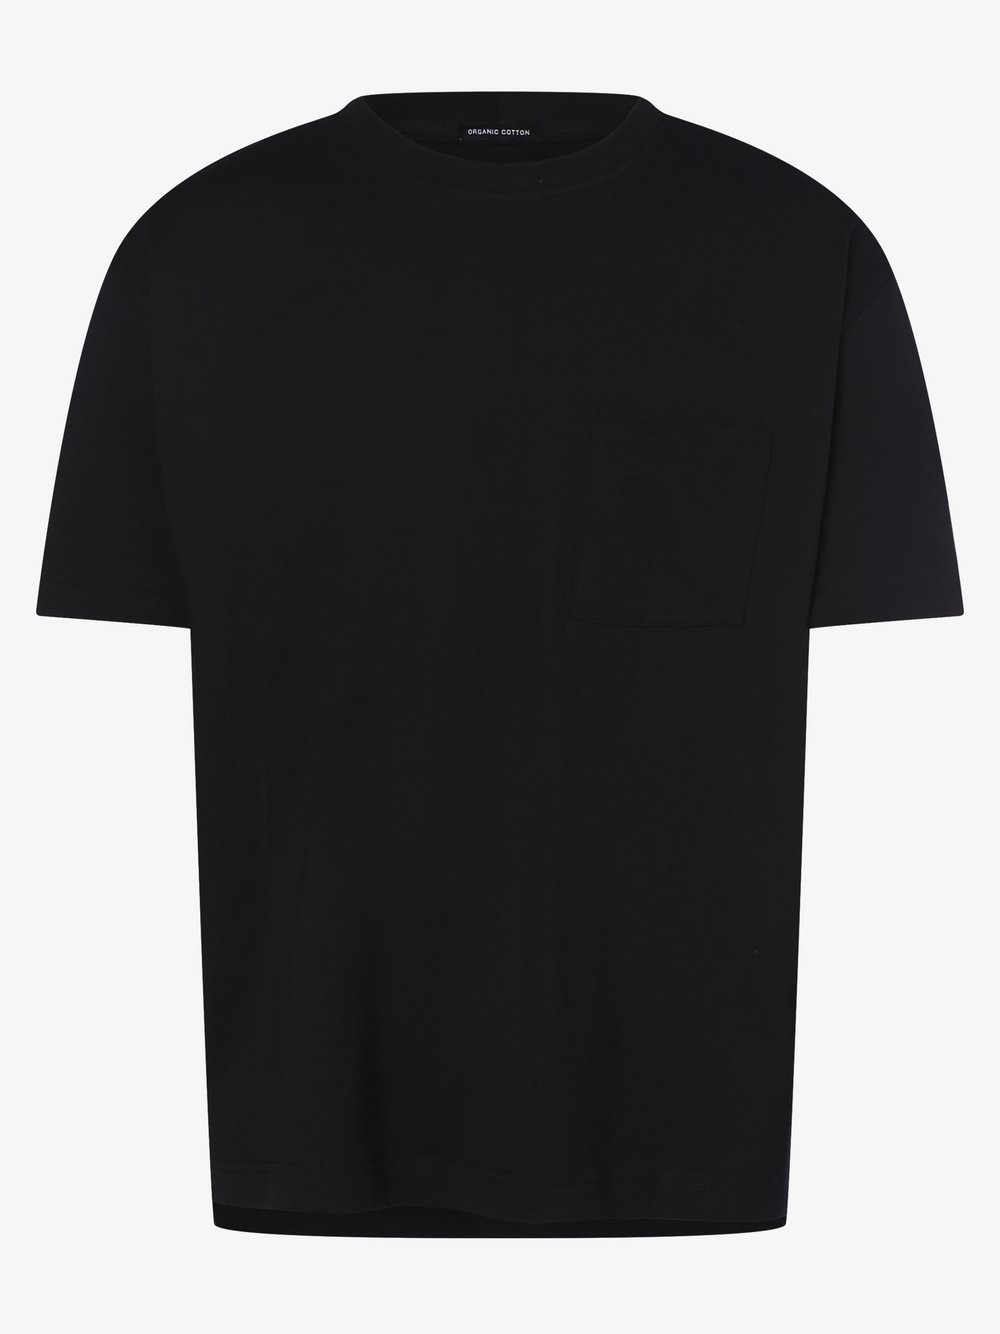 Aygill's - T-shirt męski, czarny